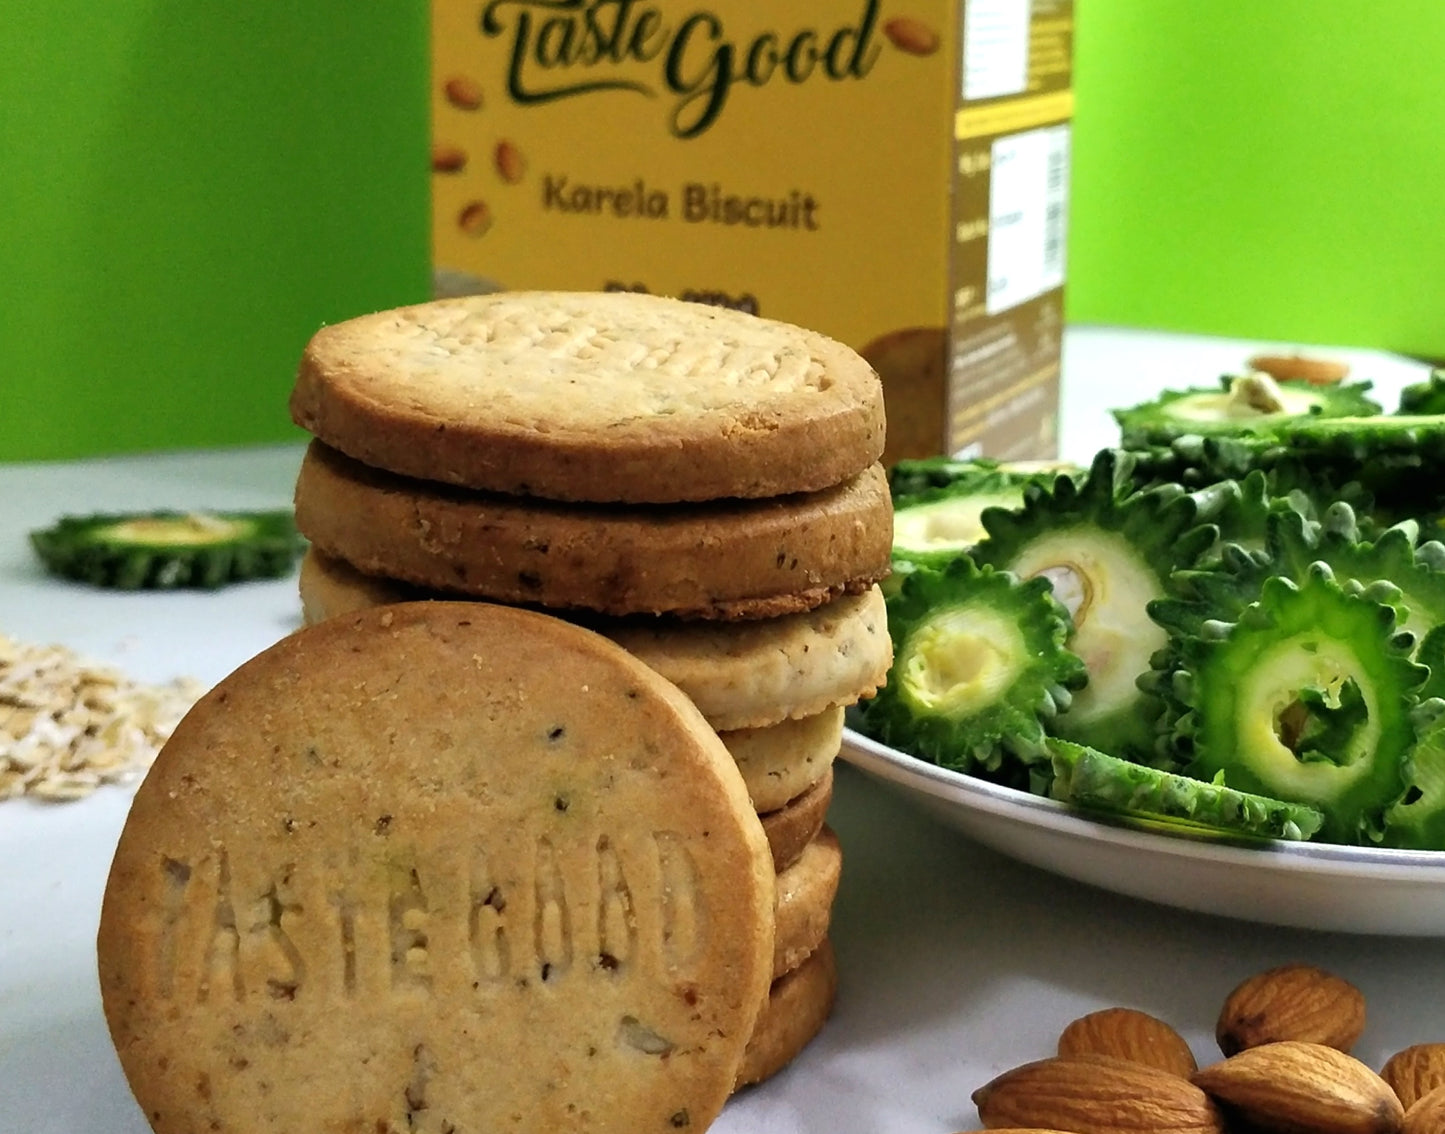 Taste Good - Karela Biscuit - Diabetic Friendly